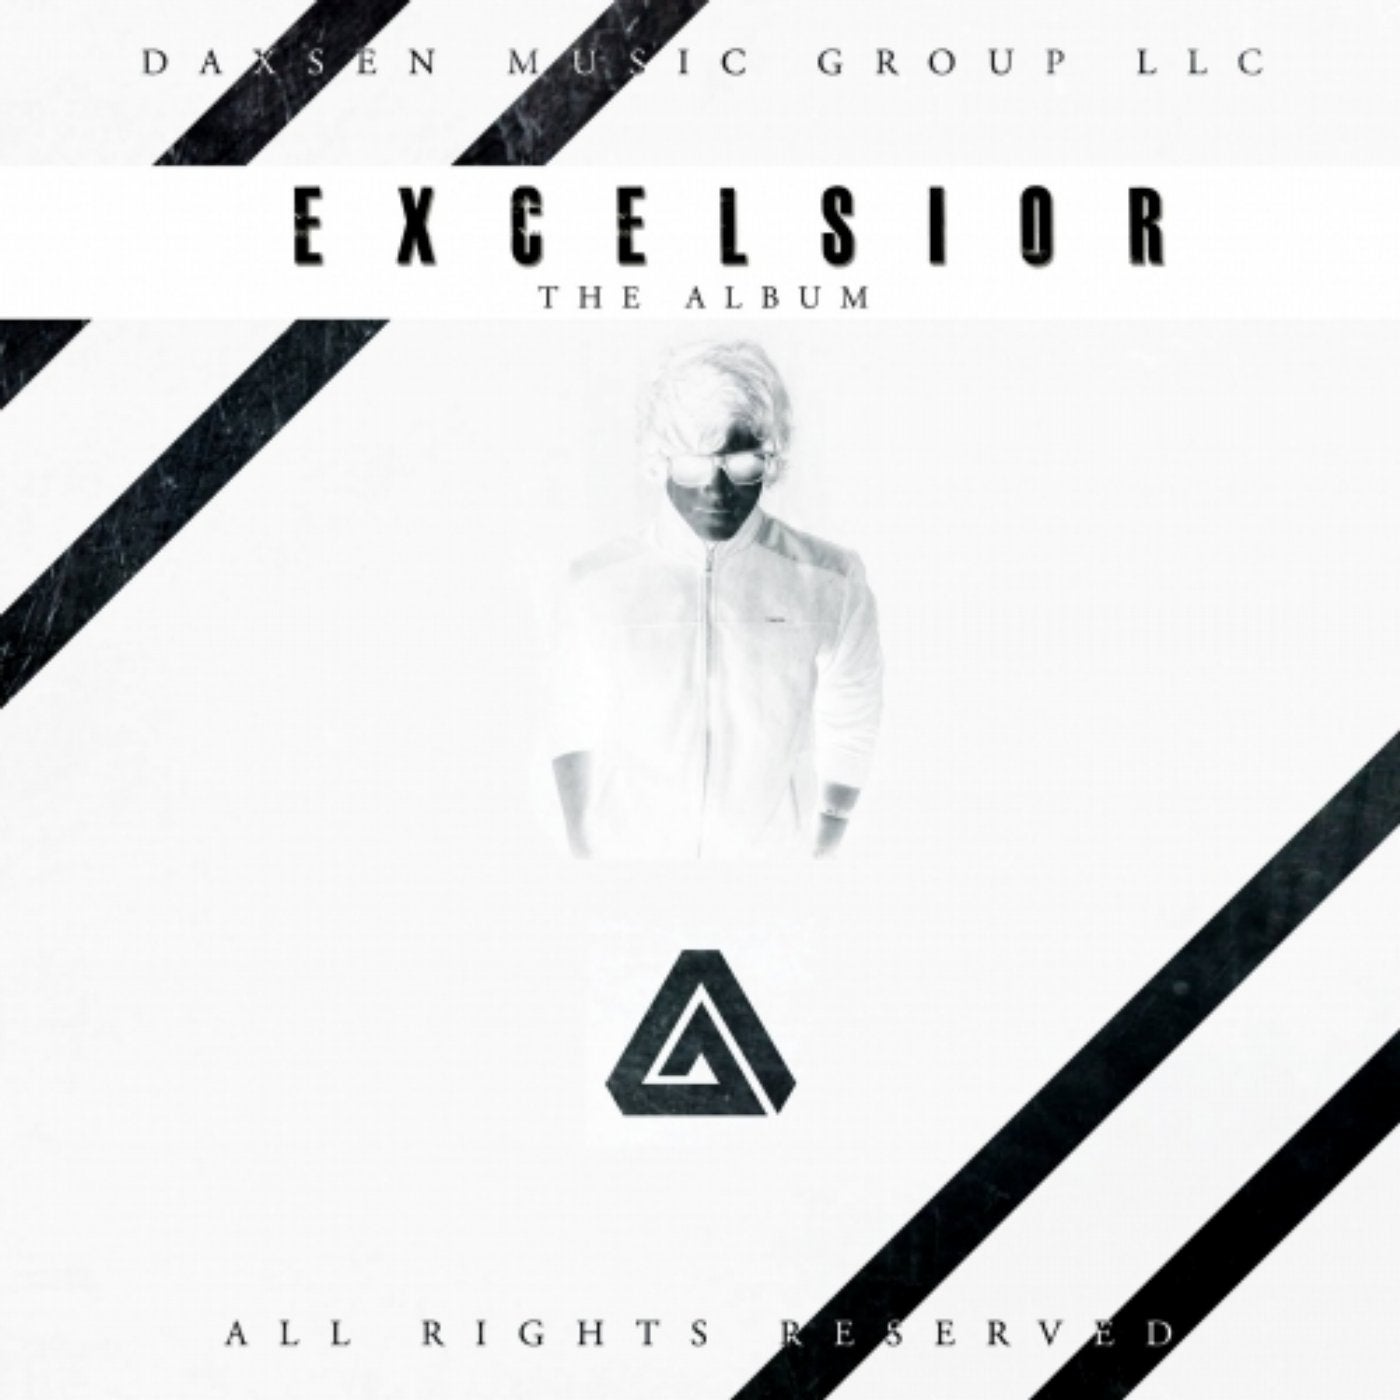 Excelsior (The Album)